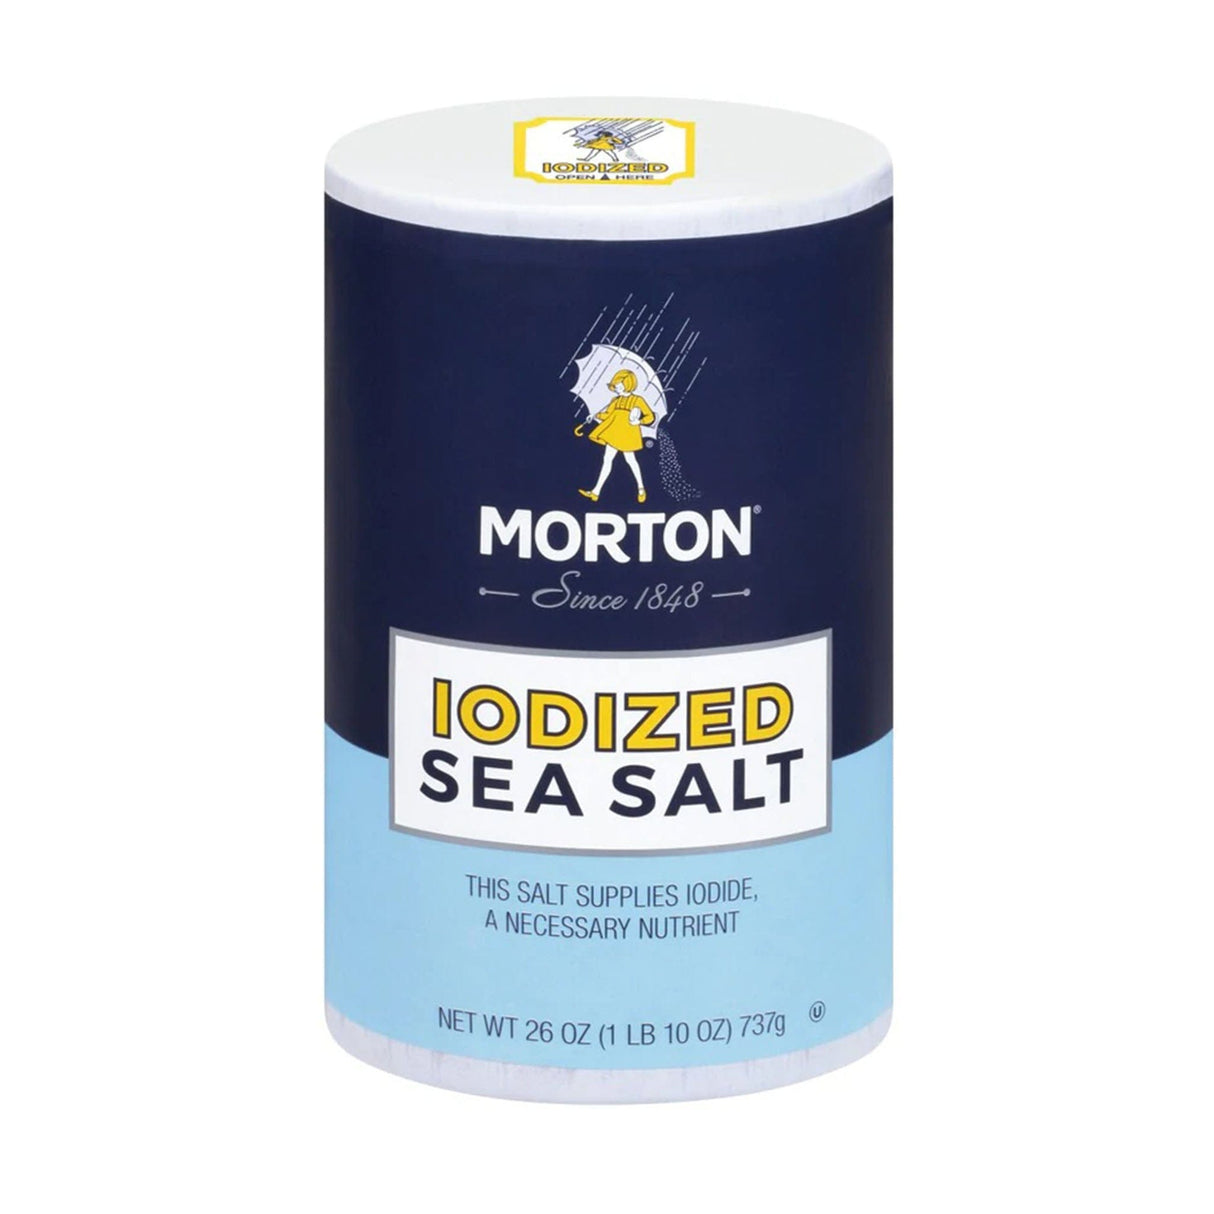 Morton Iodized Sea Salt